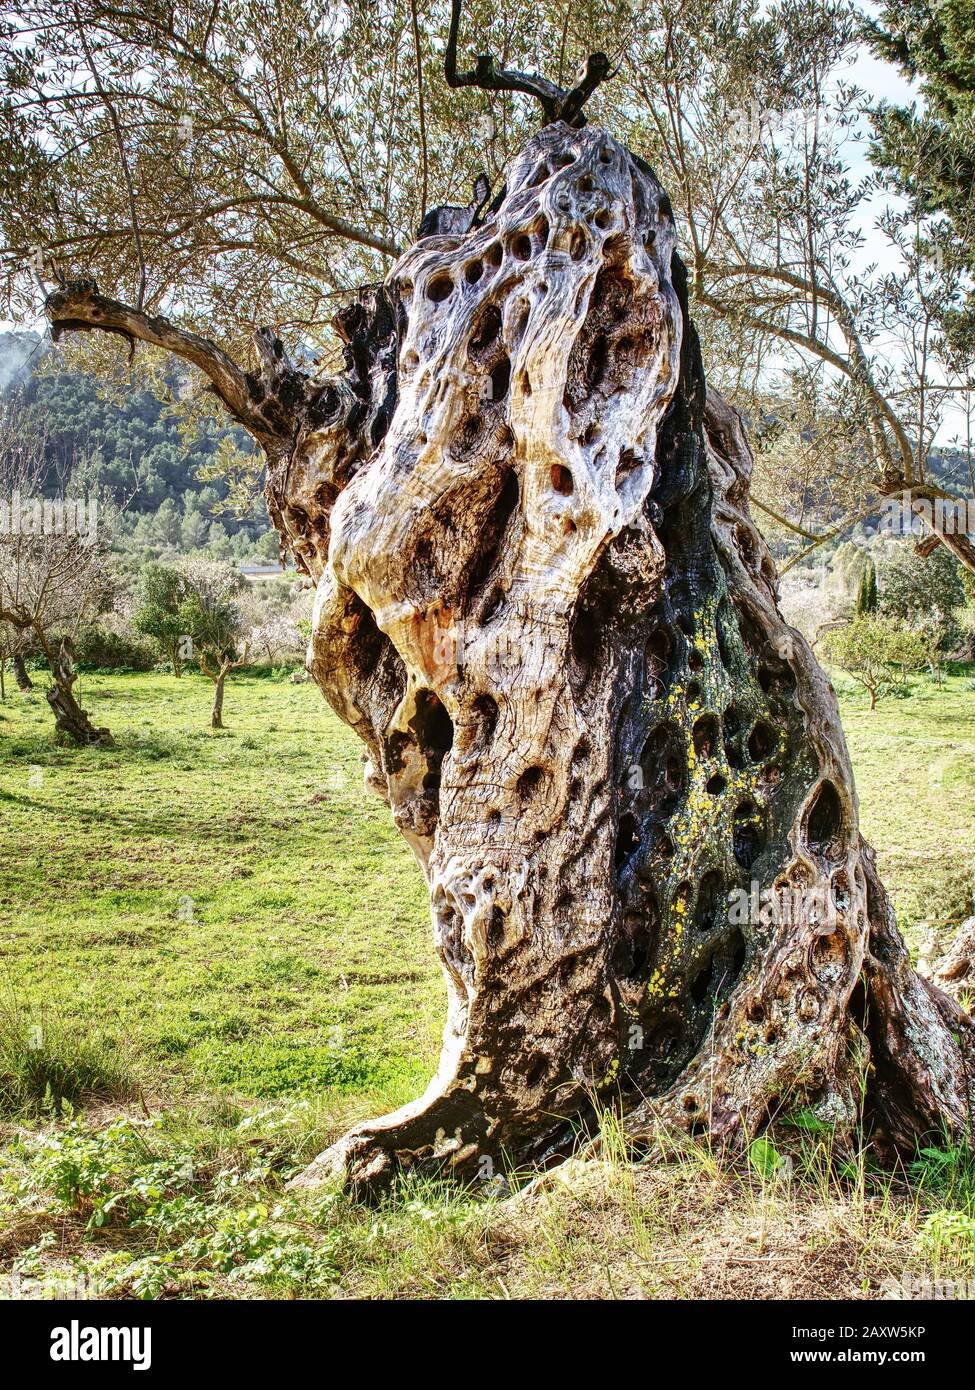 Age Old Olive Trees Immagini E Fotos Stock Alamy